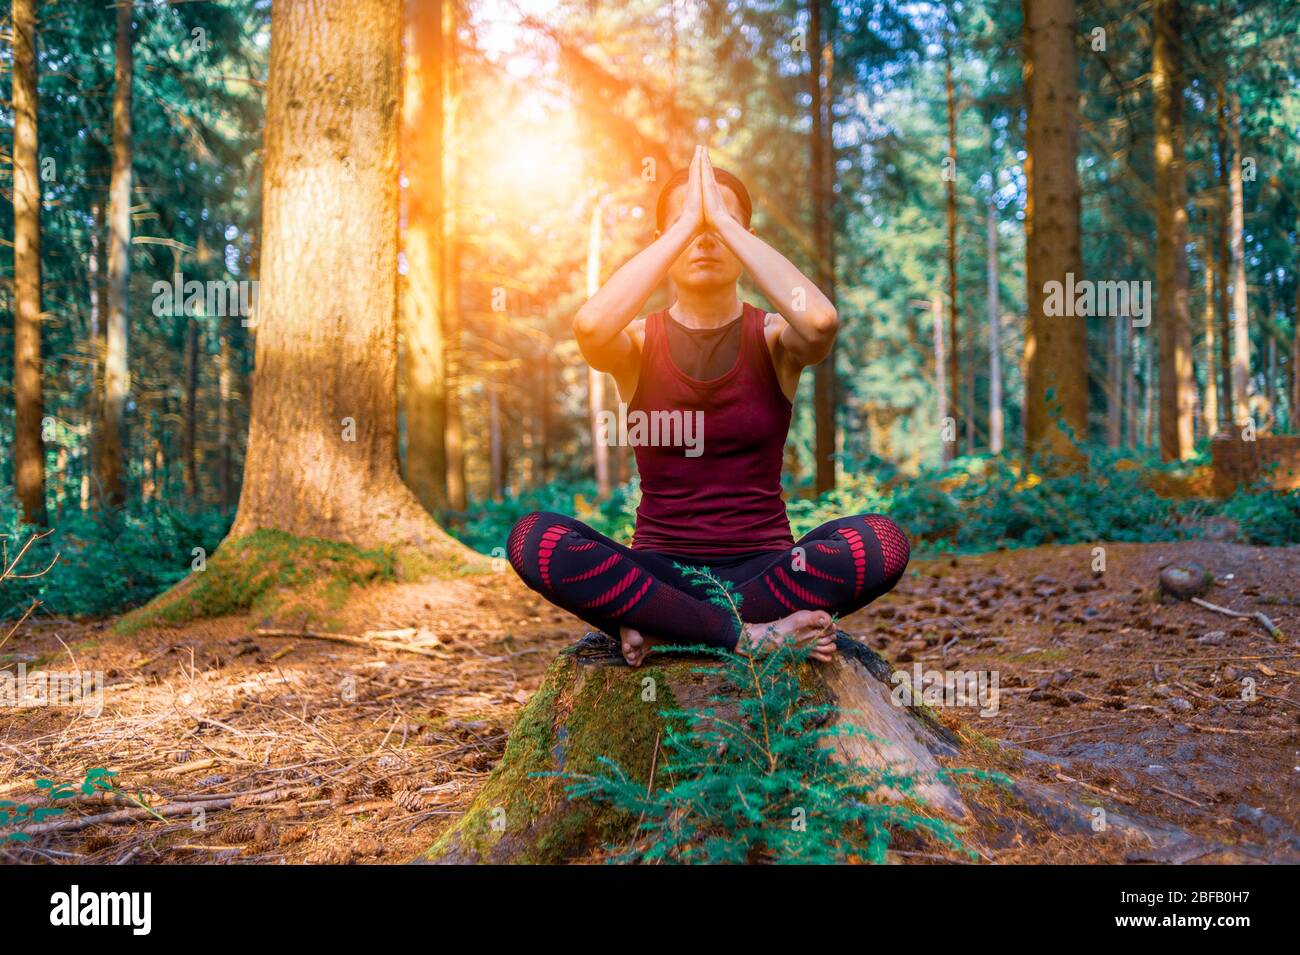 Donna meditata in ambiente boschivo, yoga mattutino nella foresta. Foto Stock